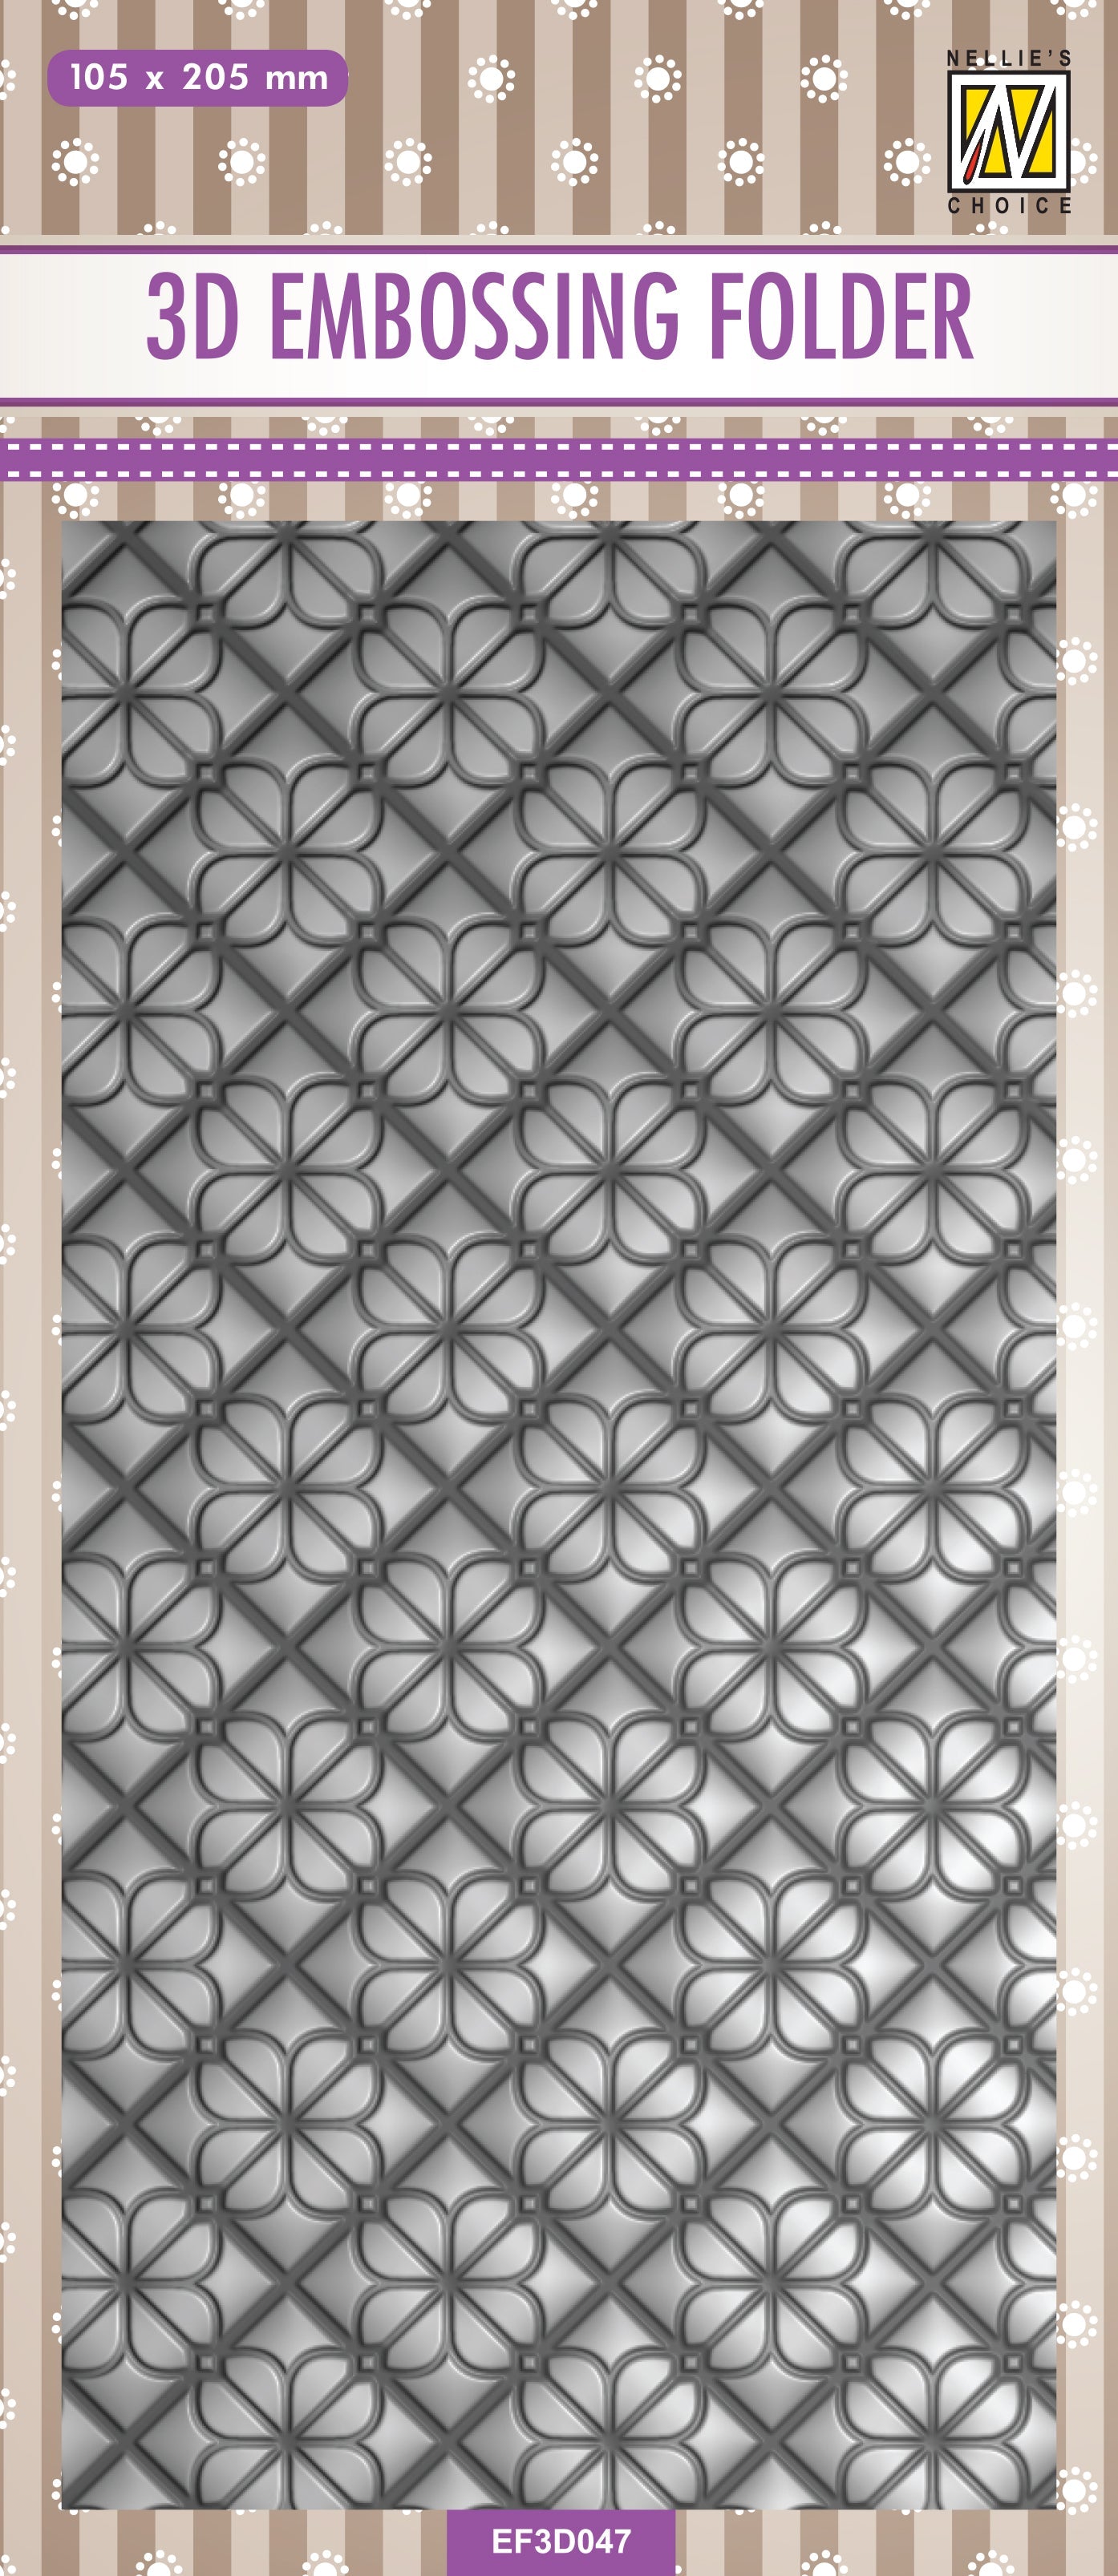 Nellie's Choice 3D Embossing Folder Slimline - Flower Backgrounds